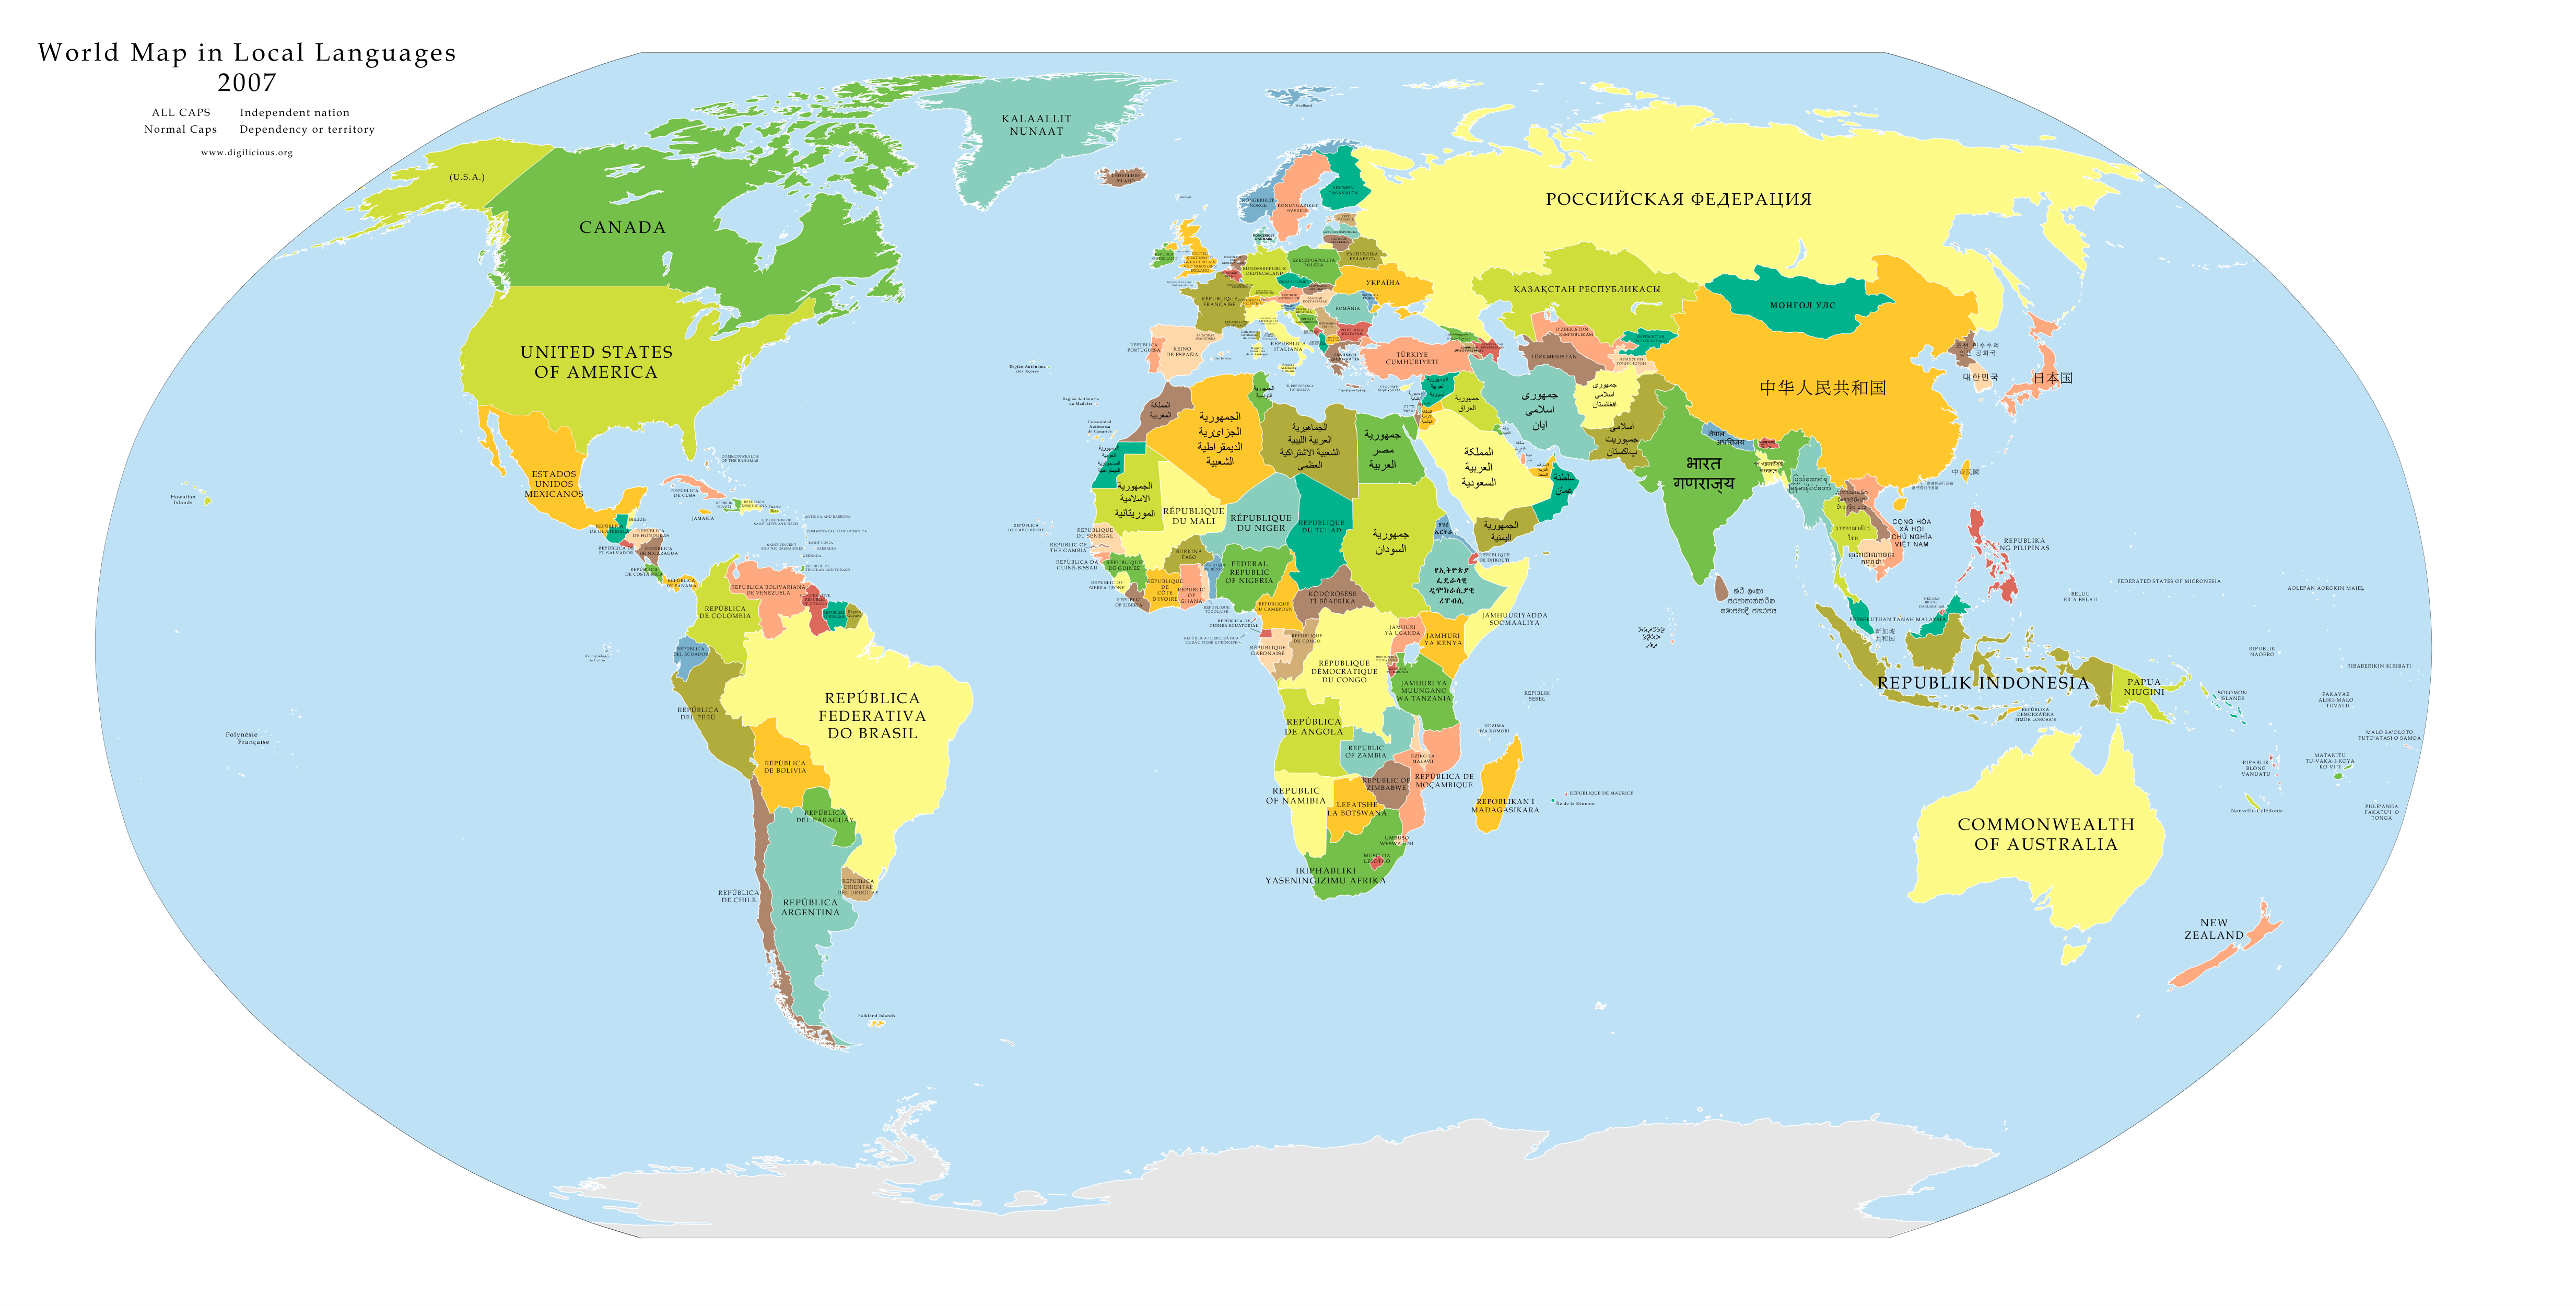 Cartograffr Toutes Les Cartes Des Pays Du Monde Page 2